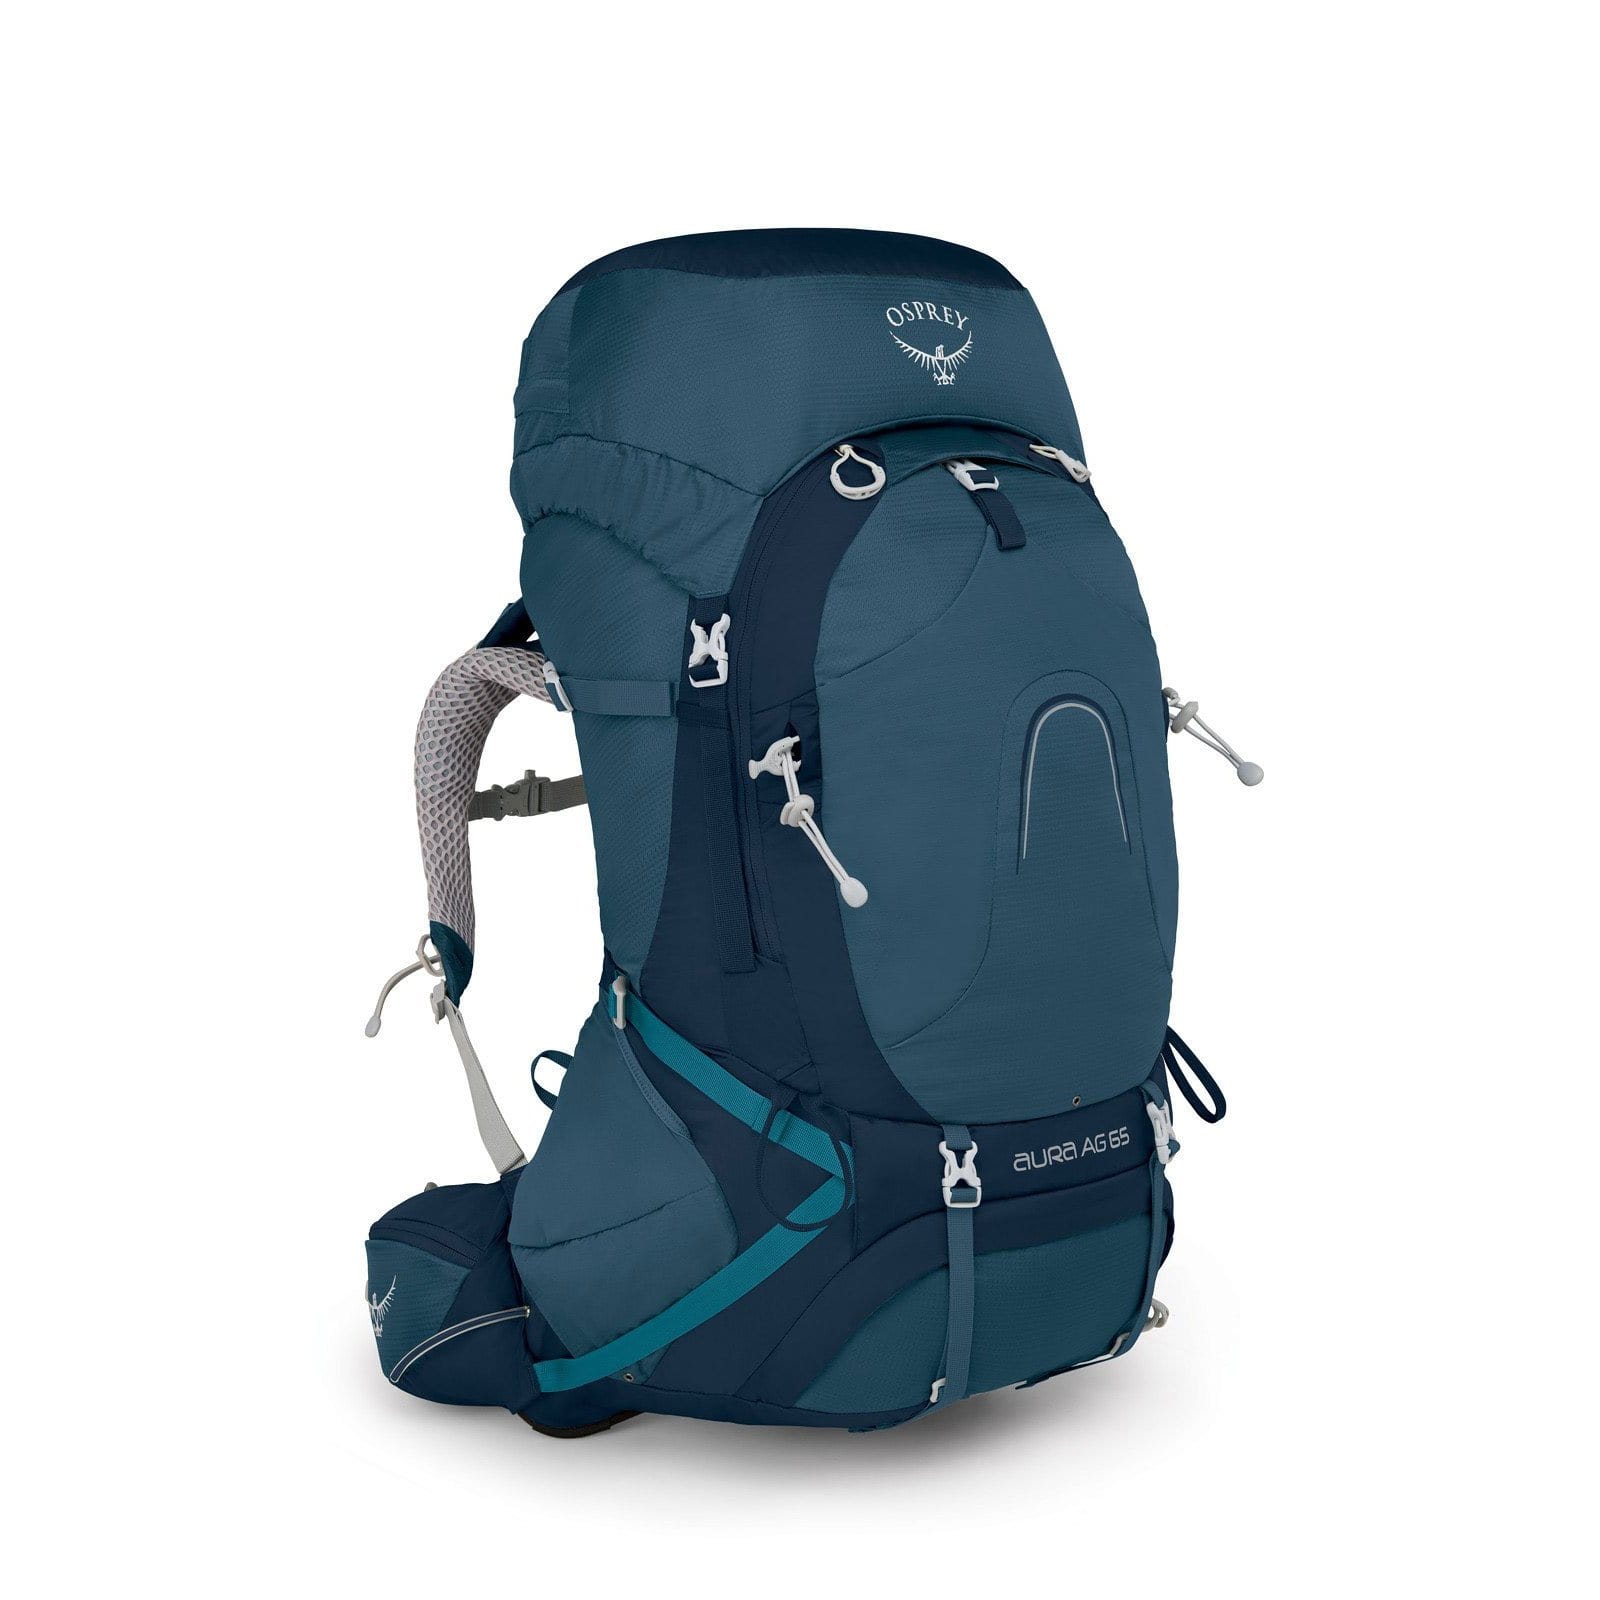 Osprey Aura AG 65 Women's Backpacking Pack